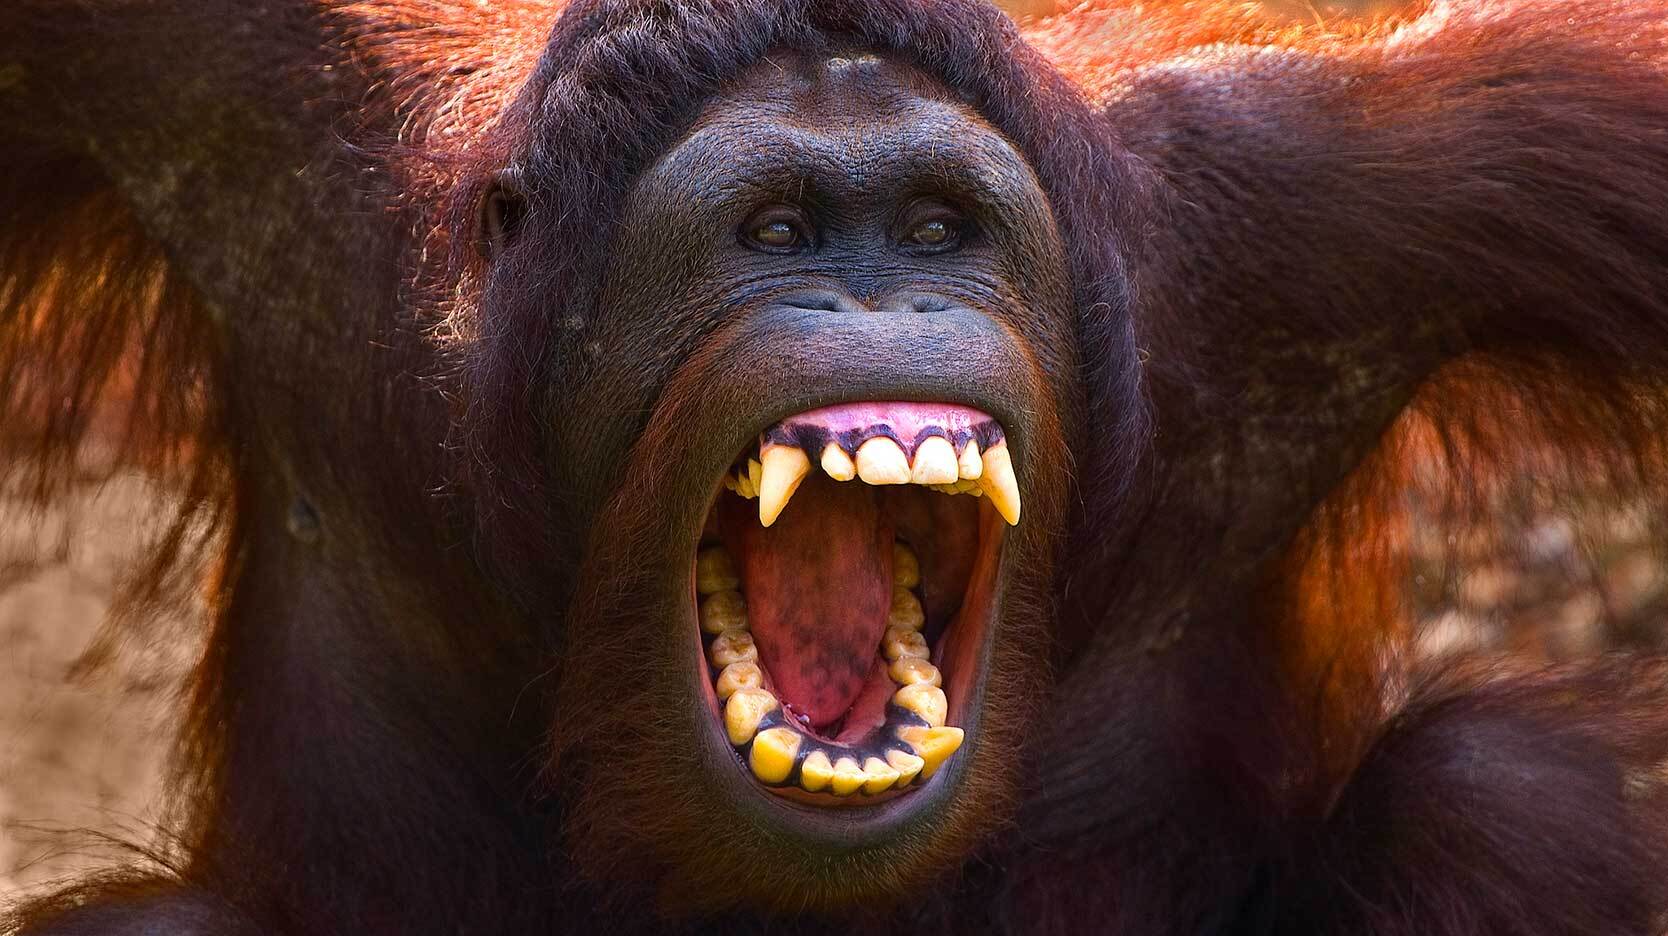 orangutan showing teeth